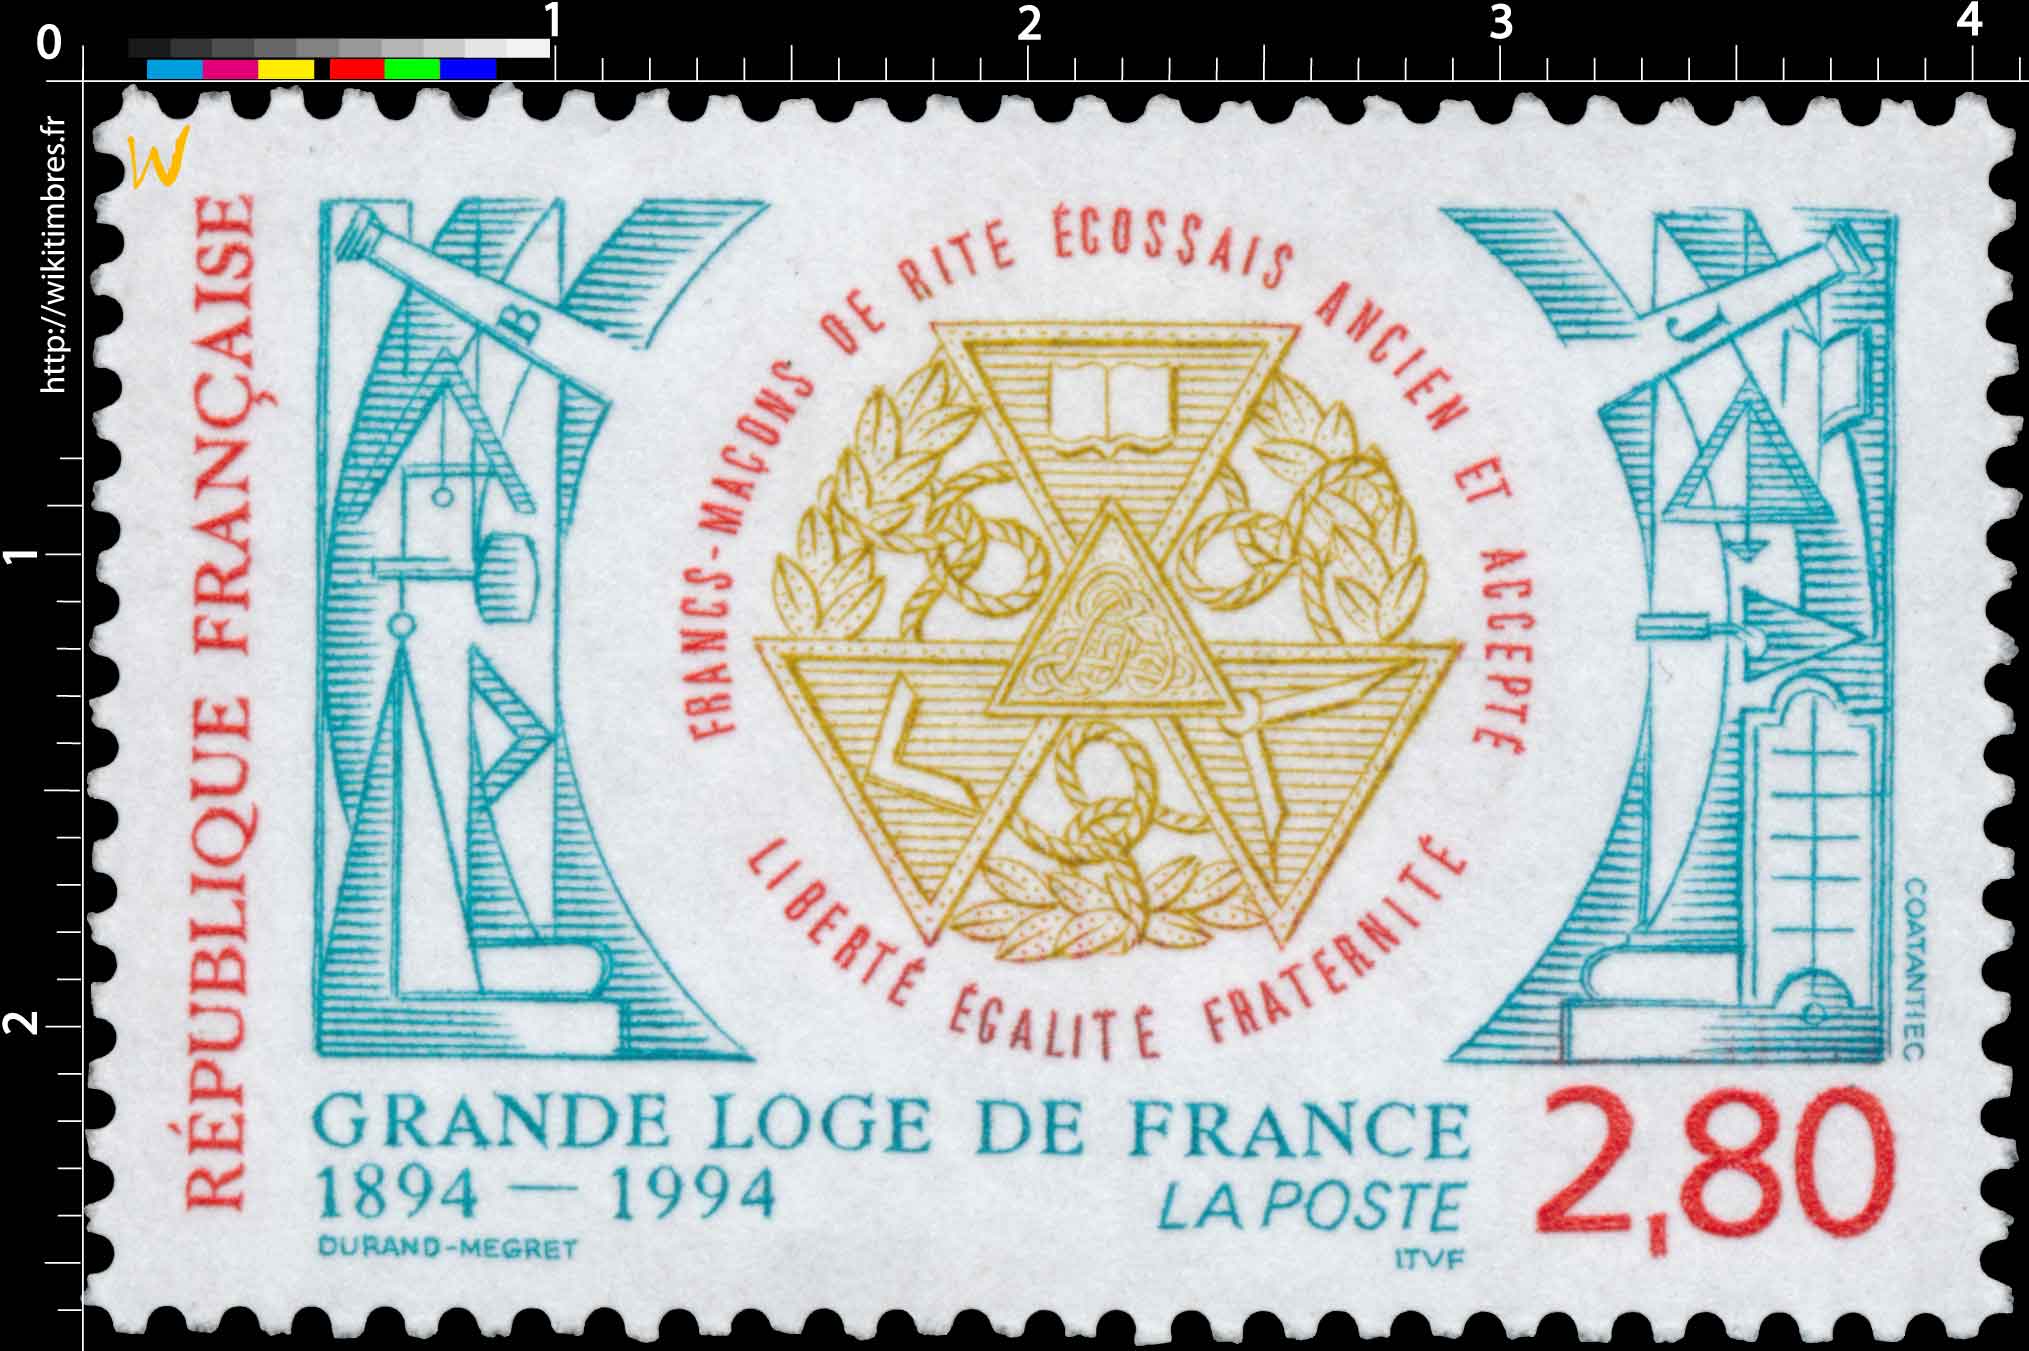 GRANDE LOGE DE FRANCE 1894-1994 FRANC-MAÇON DE RITE ÉCOSSAIS ANCIEN ET ACCEPTE LIBERTÉ EGALITE FRATERNITÉ